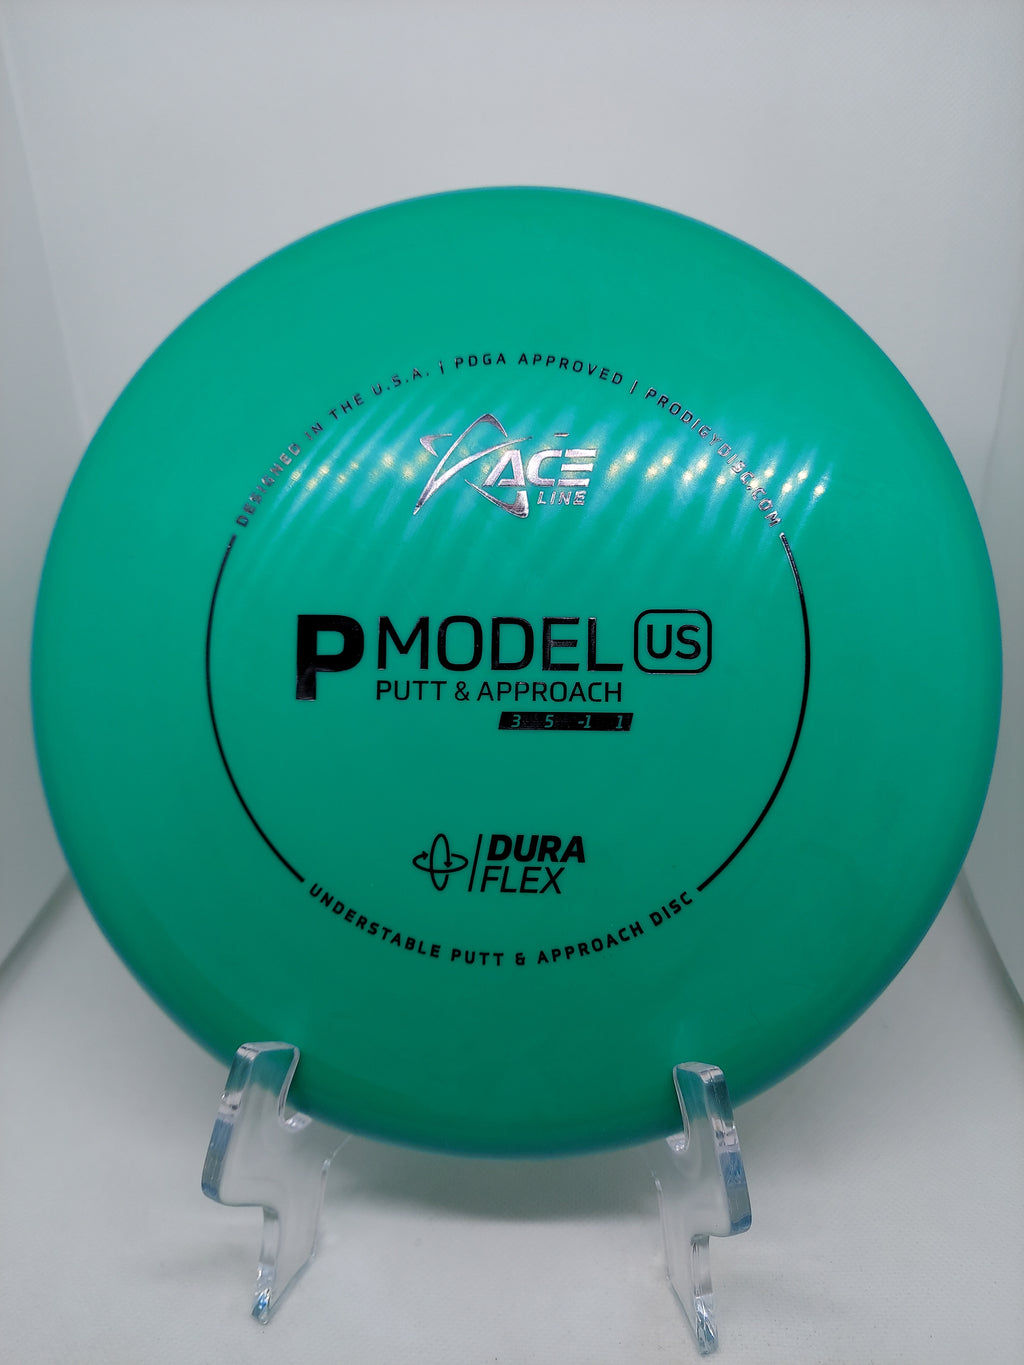 P Model US ( Dura Flex )